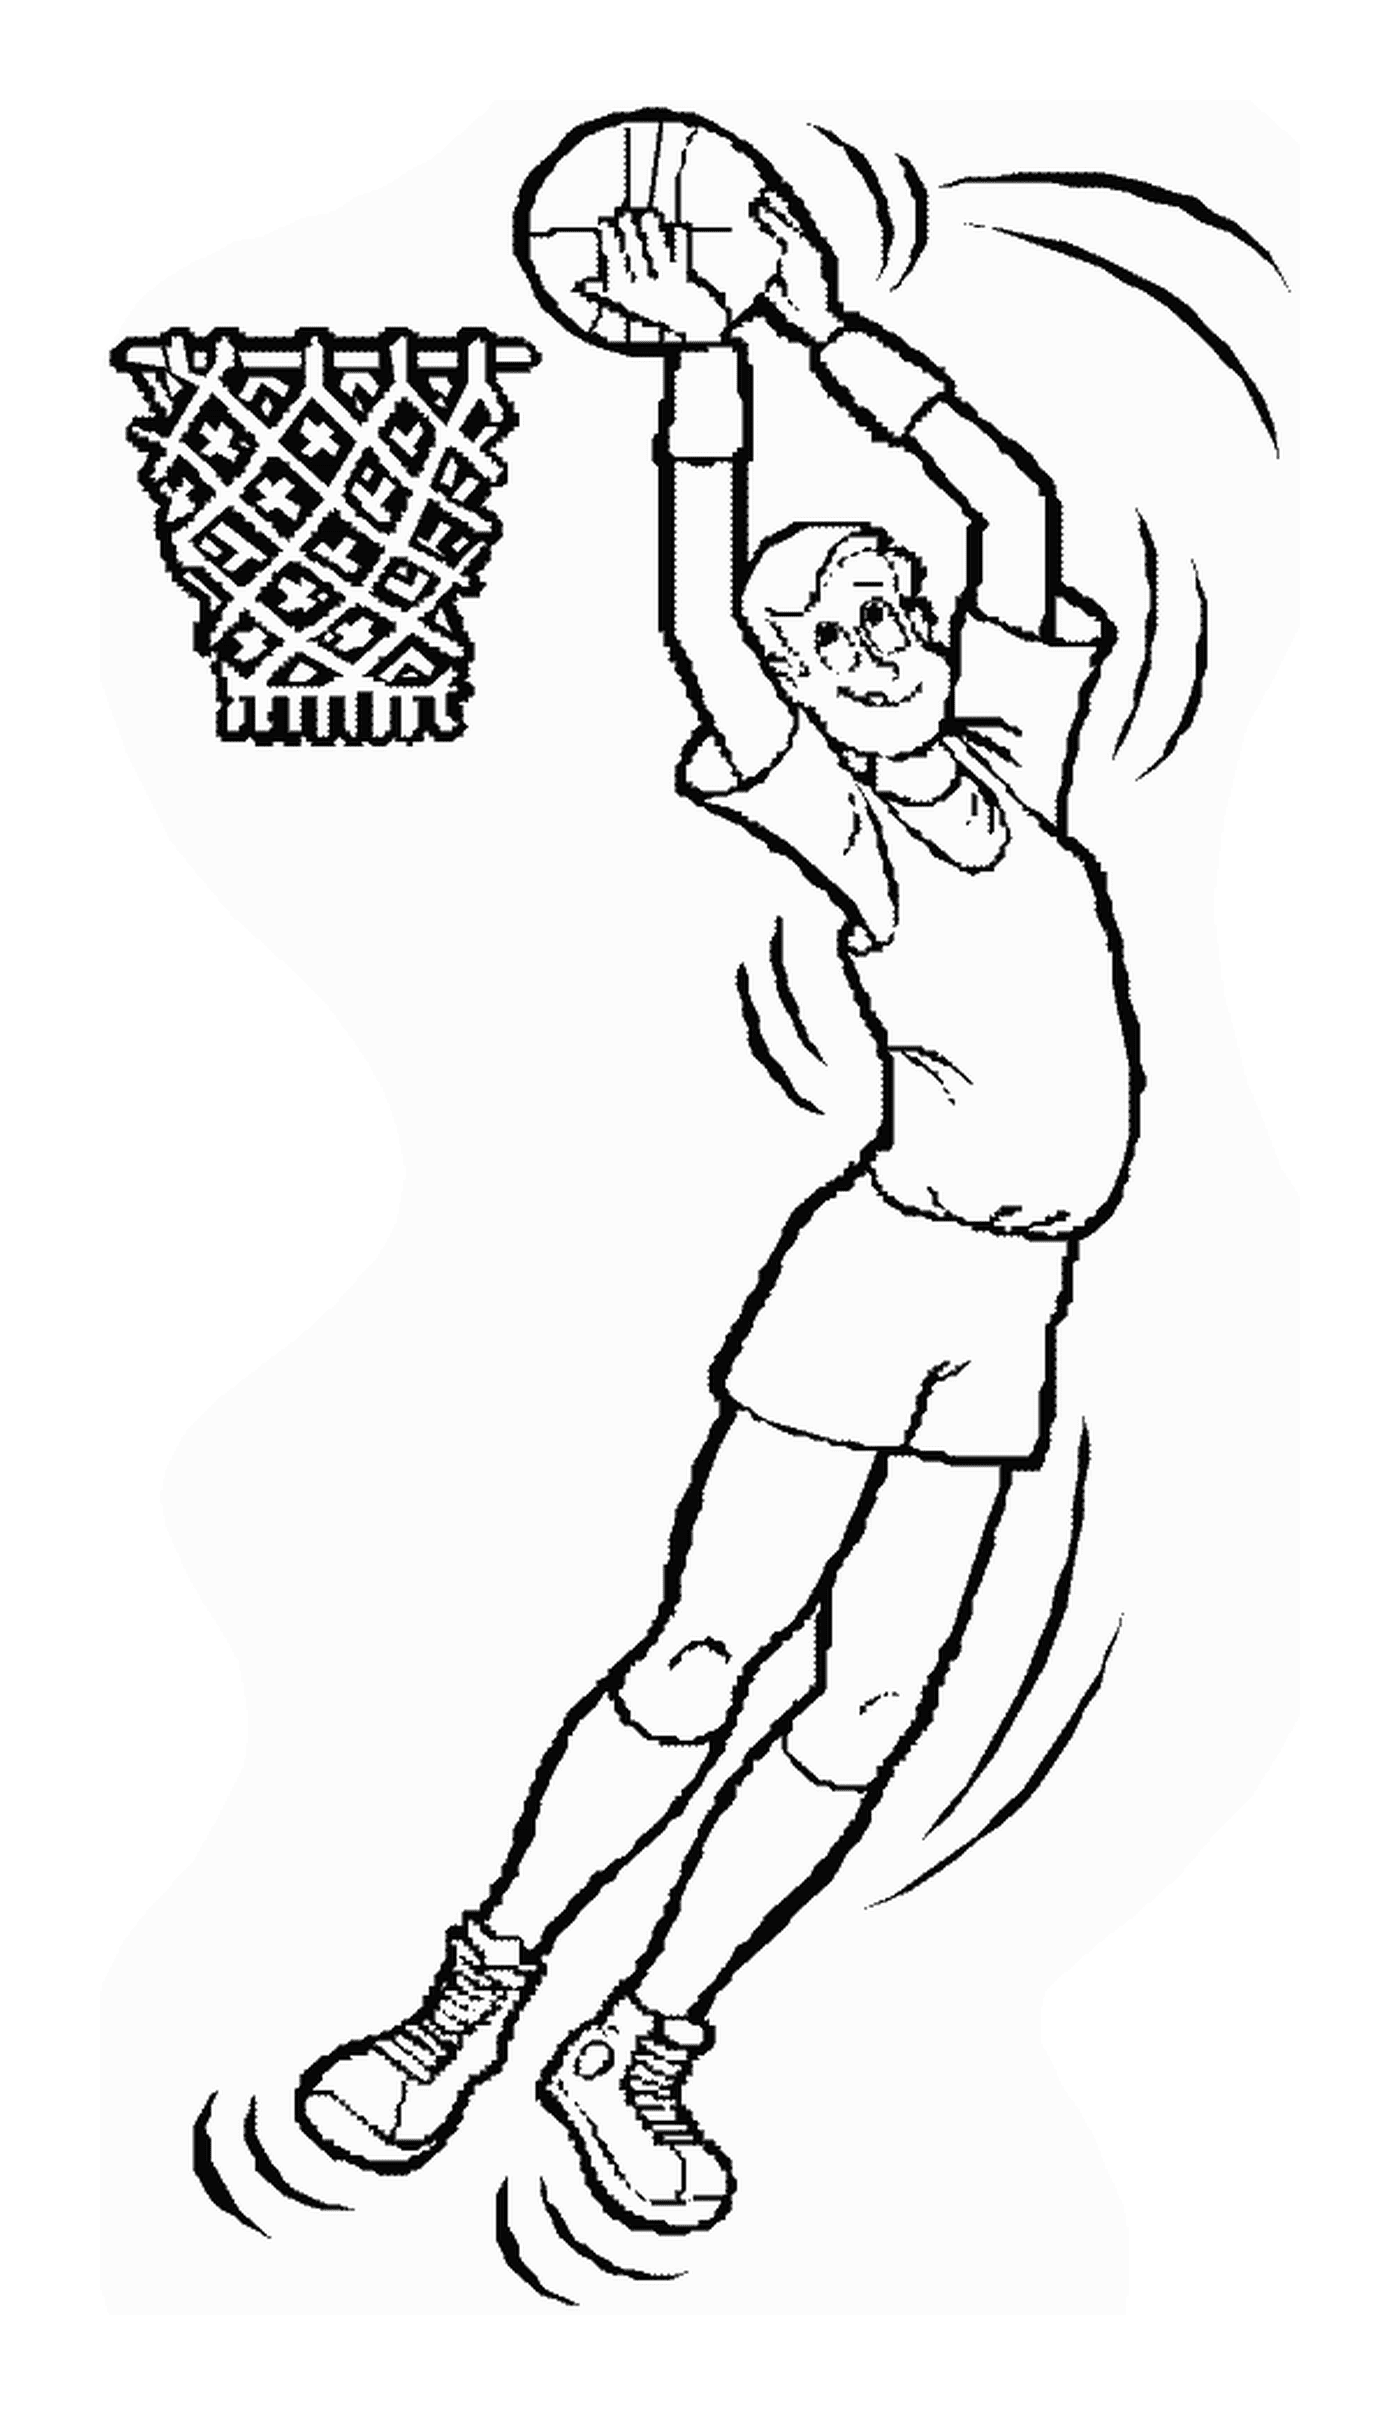   Un homme saute pour frapper un ballon de basketball 